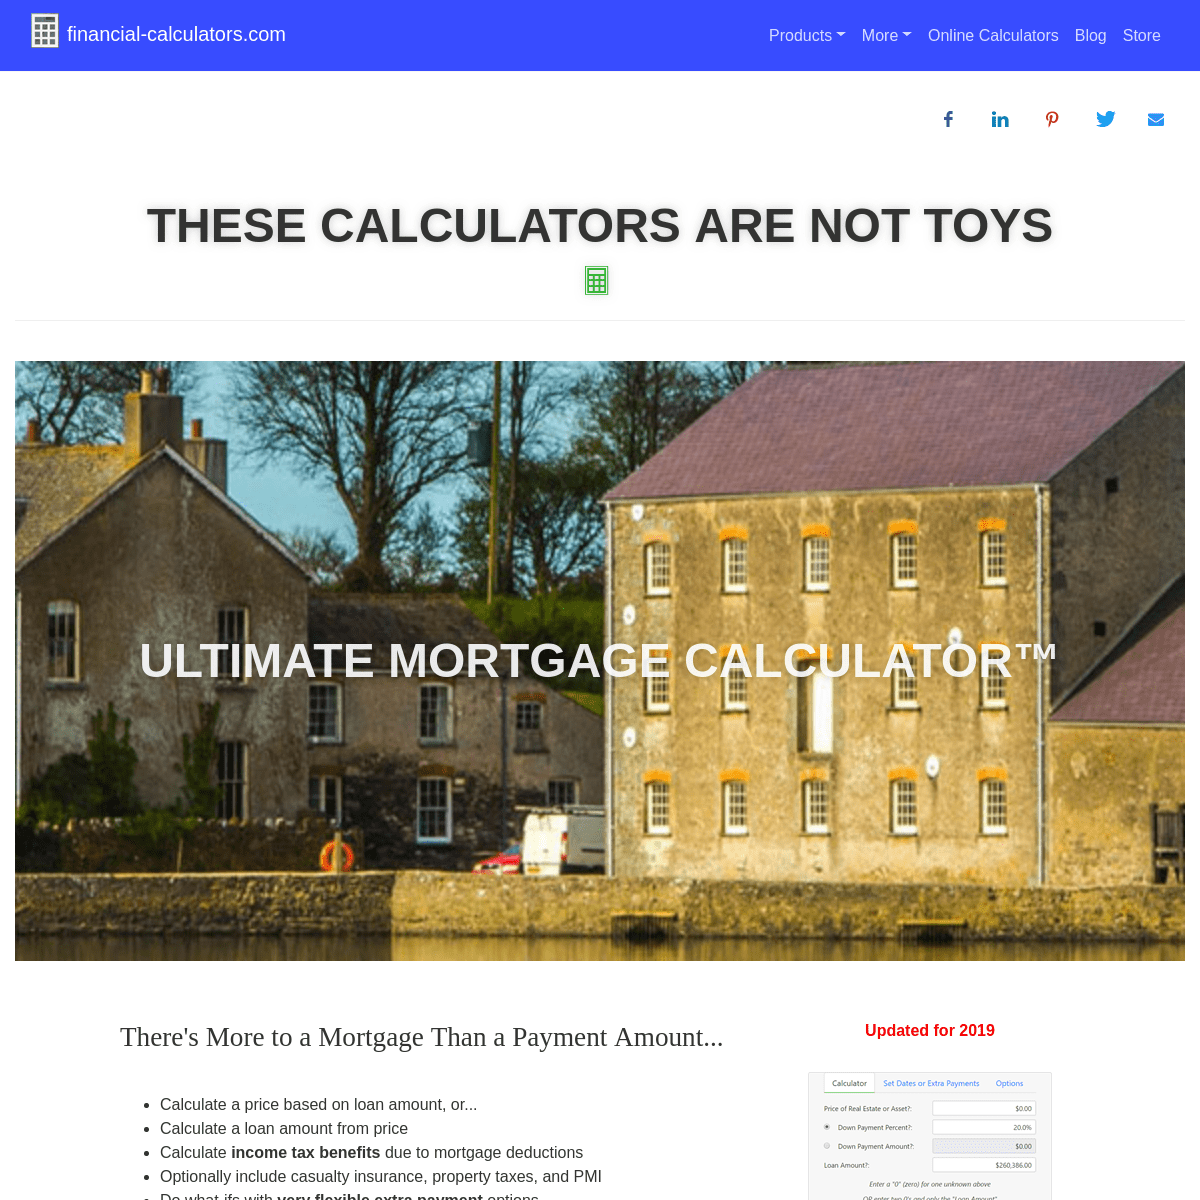 A complete backup of financial-calculators.com